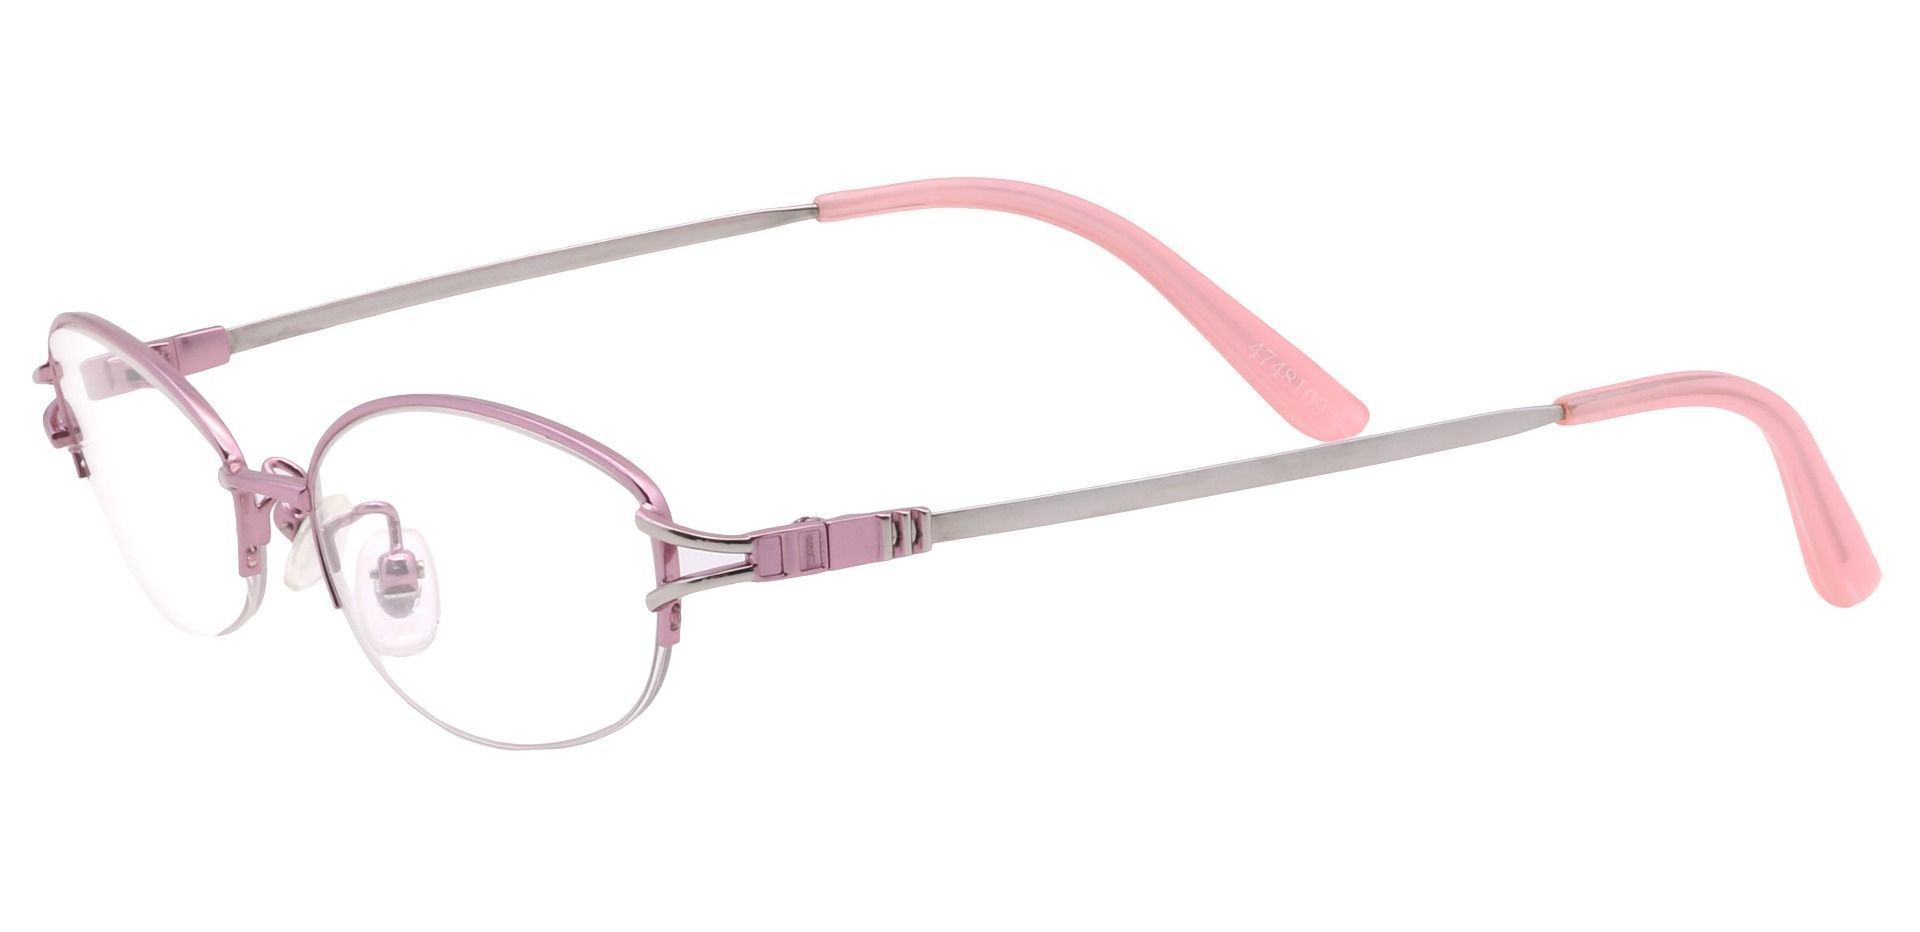 Corsica Oval Eyeglasses Frame - Pink